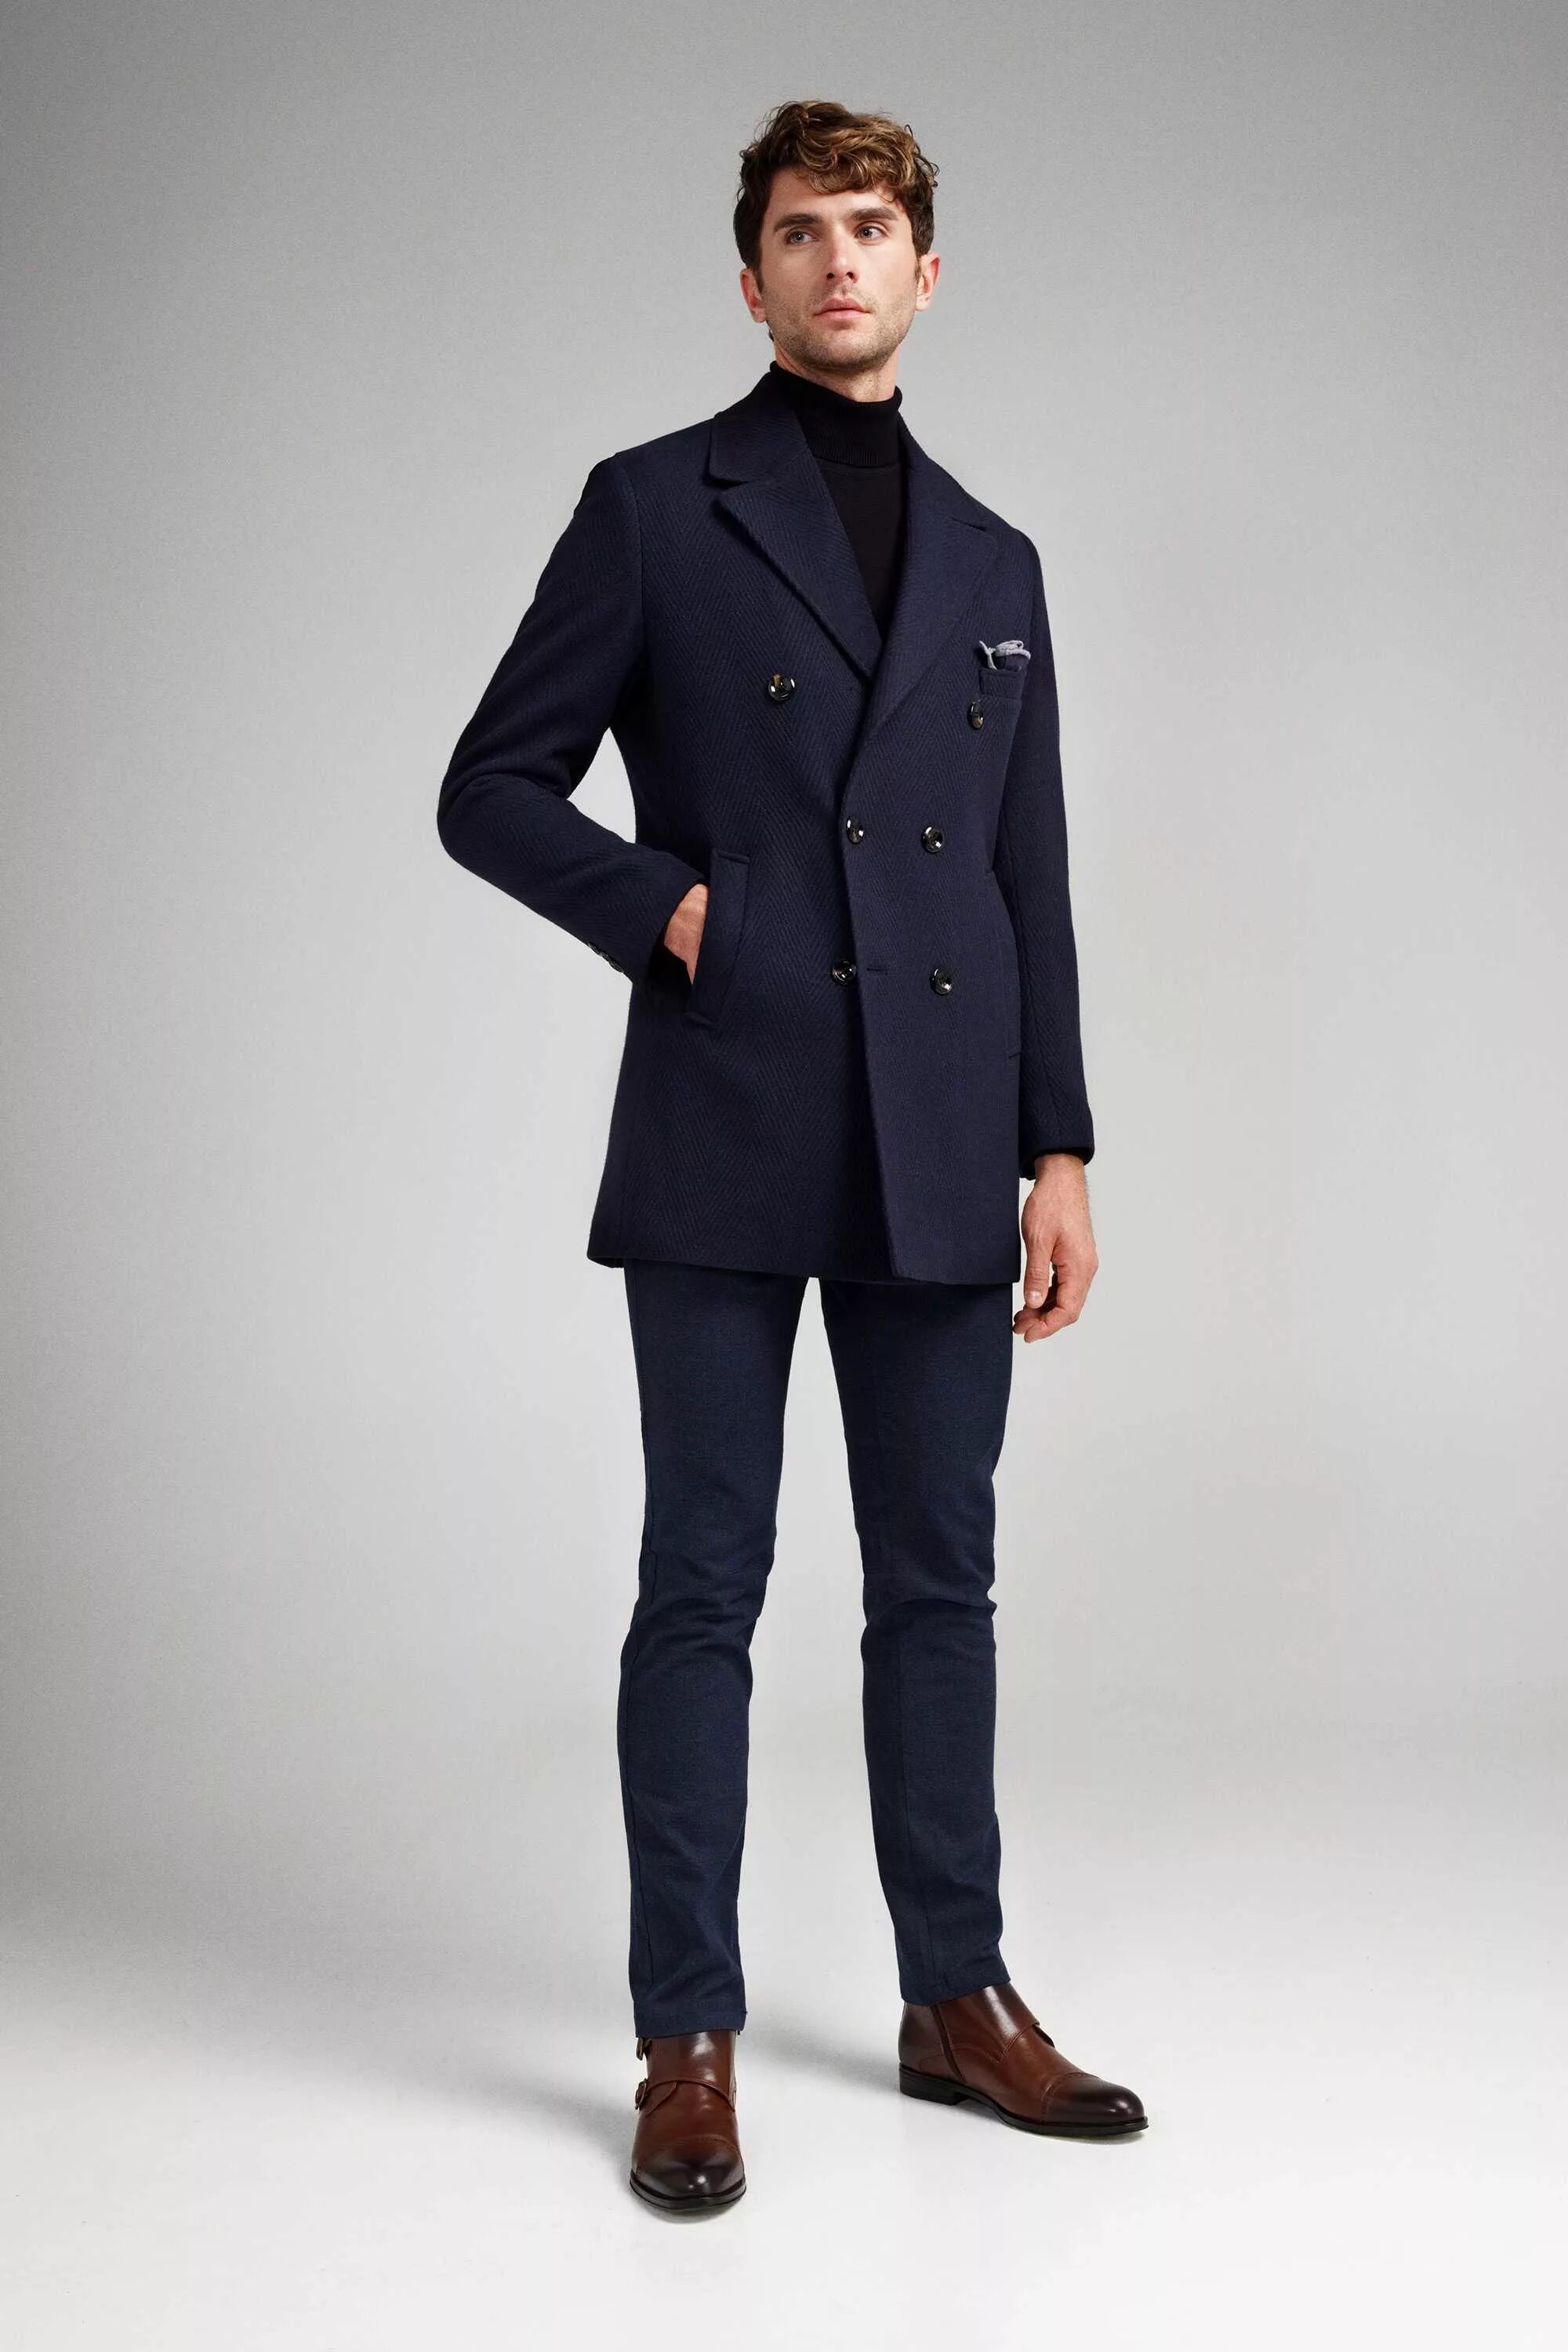 Мужское пальто озон. Двубортное пальто мужское. Пальто мужское приталенное. Синее пальто мужское. Темно синее пальто мужское.